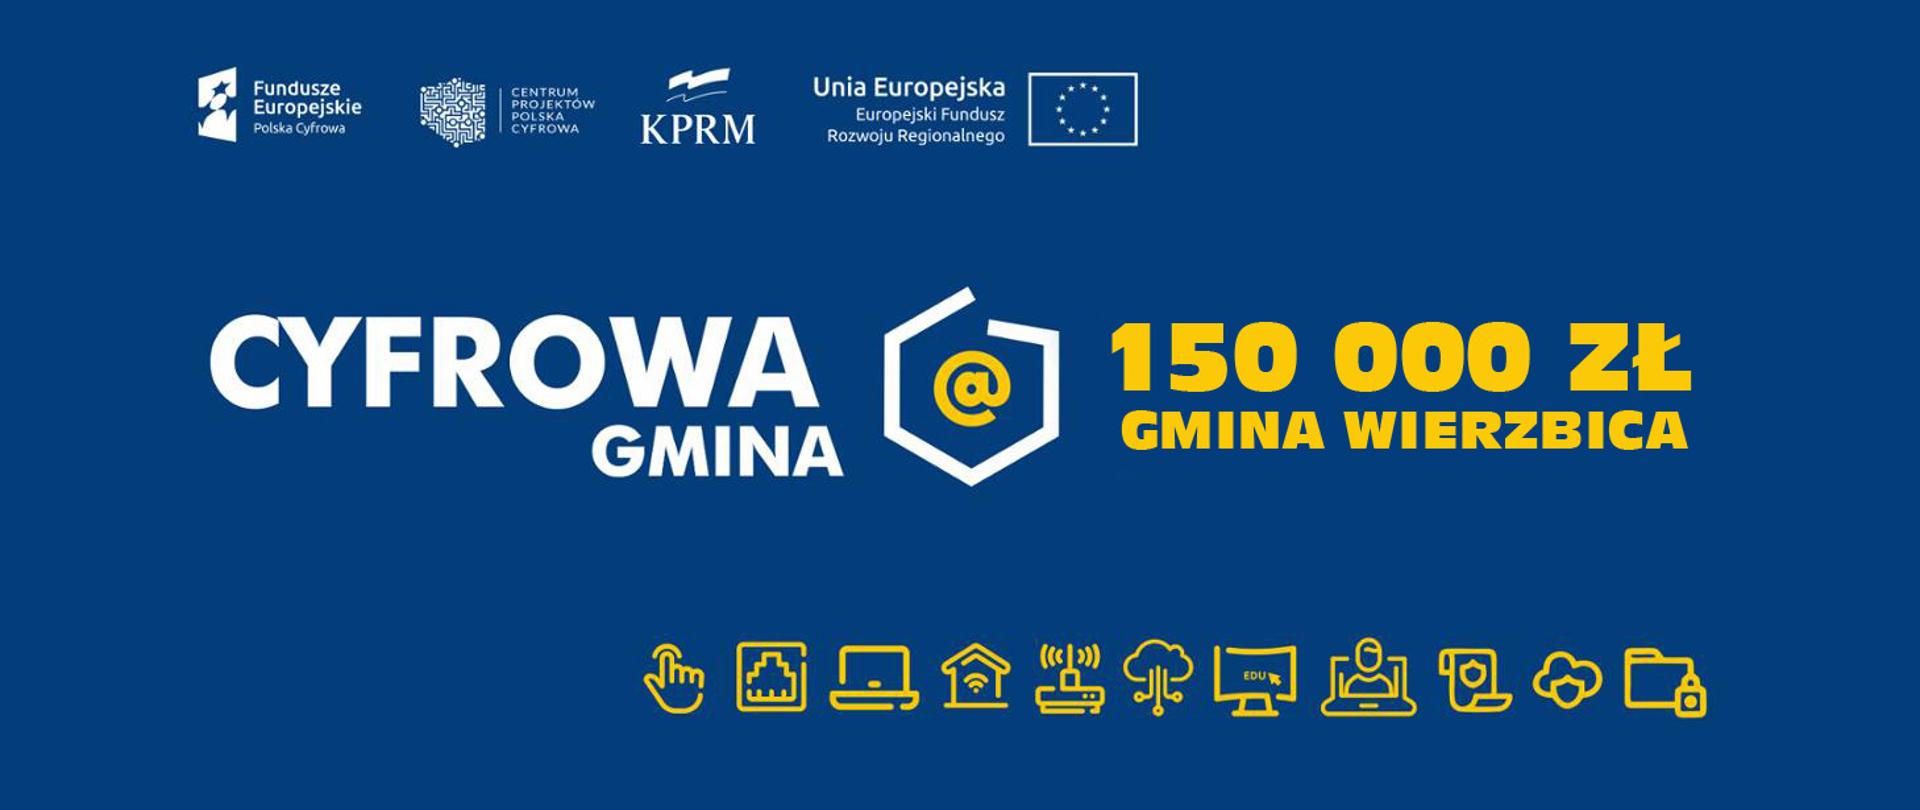 promesa programu Cyfrowa Gmina o wartości 150000 zł dla Gminy Wierzbica, grafika na niebieskim tle przedstawia białe logotypy projektu, oraz żółte grafiki informatyczne